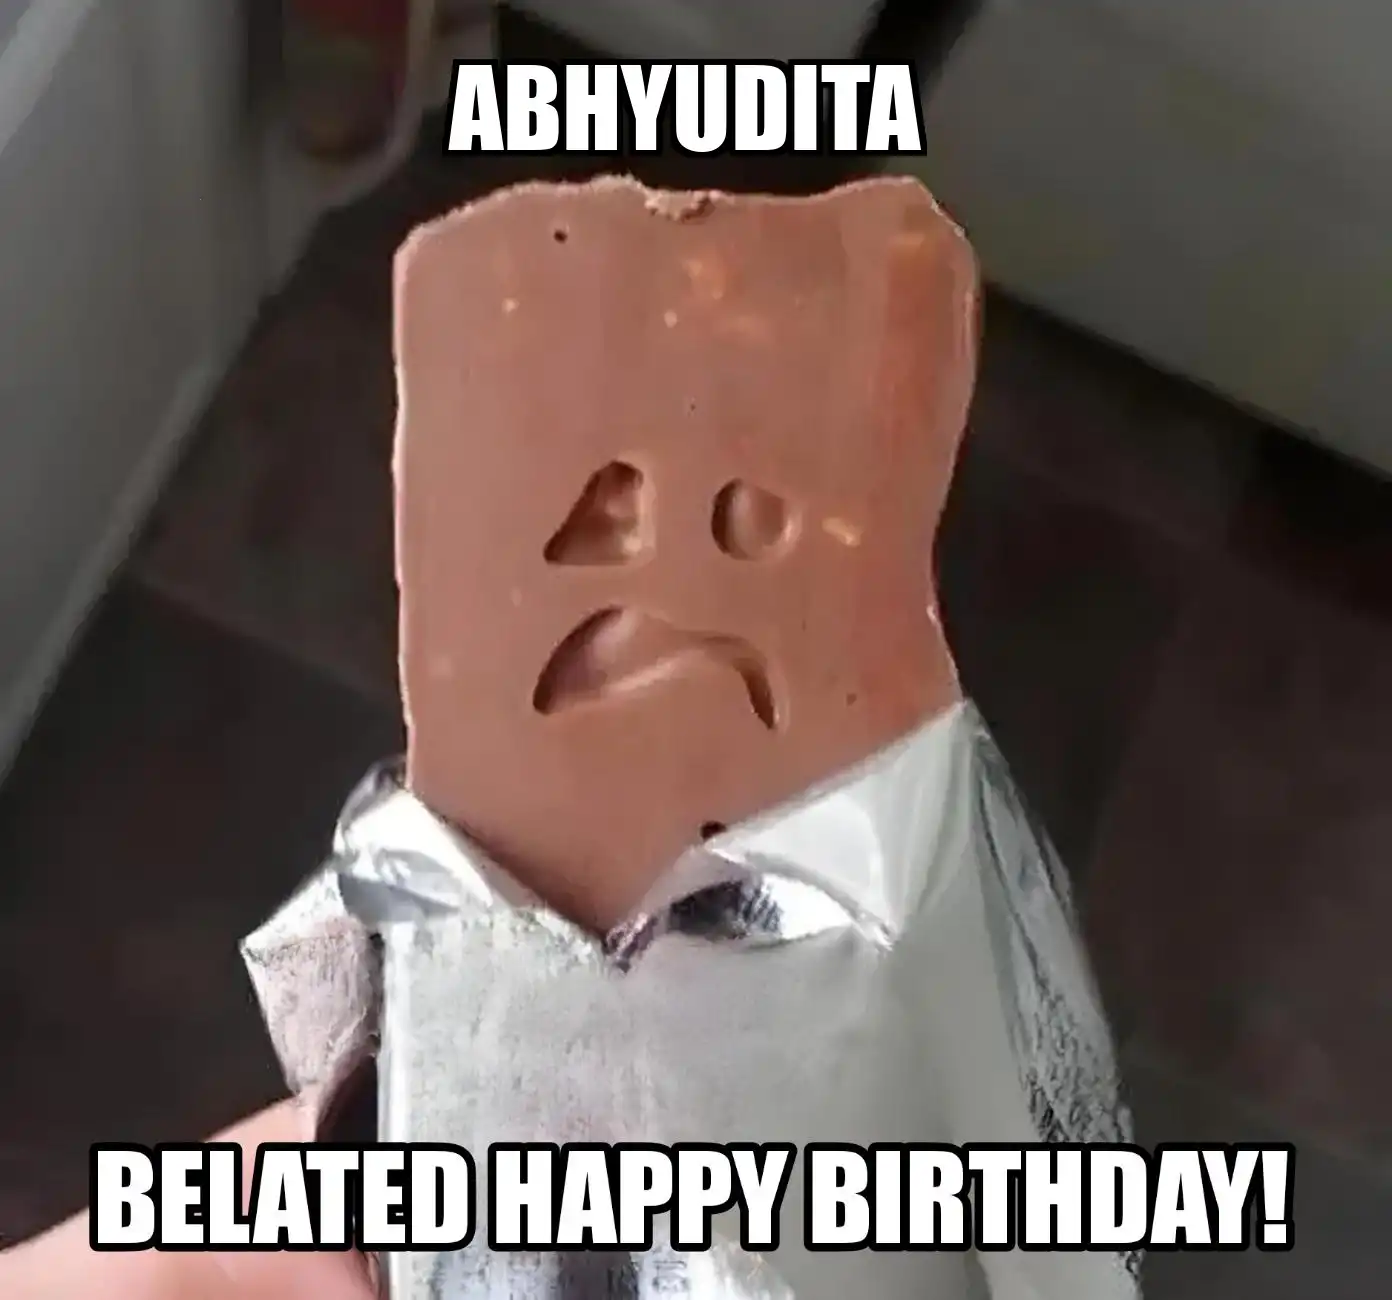 Happy Birthday Abhyudita Belated Happy Birthday Meme